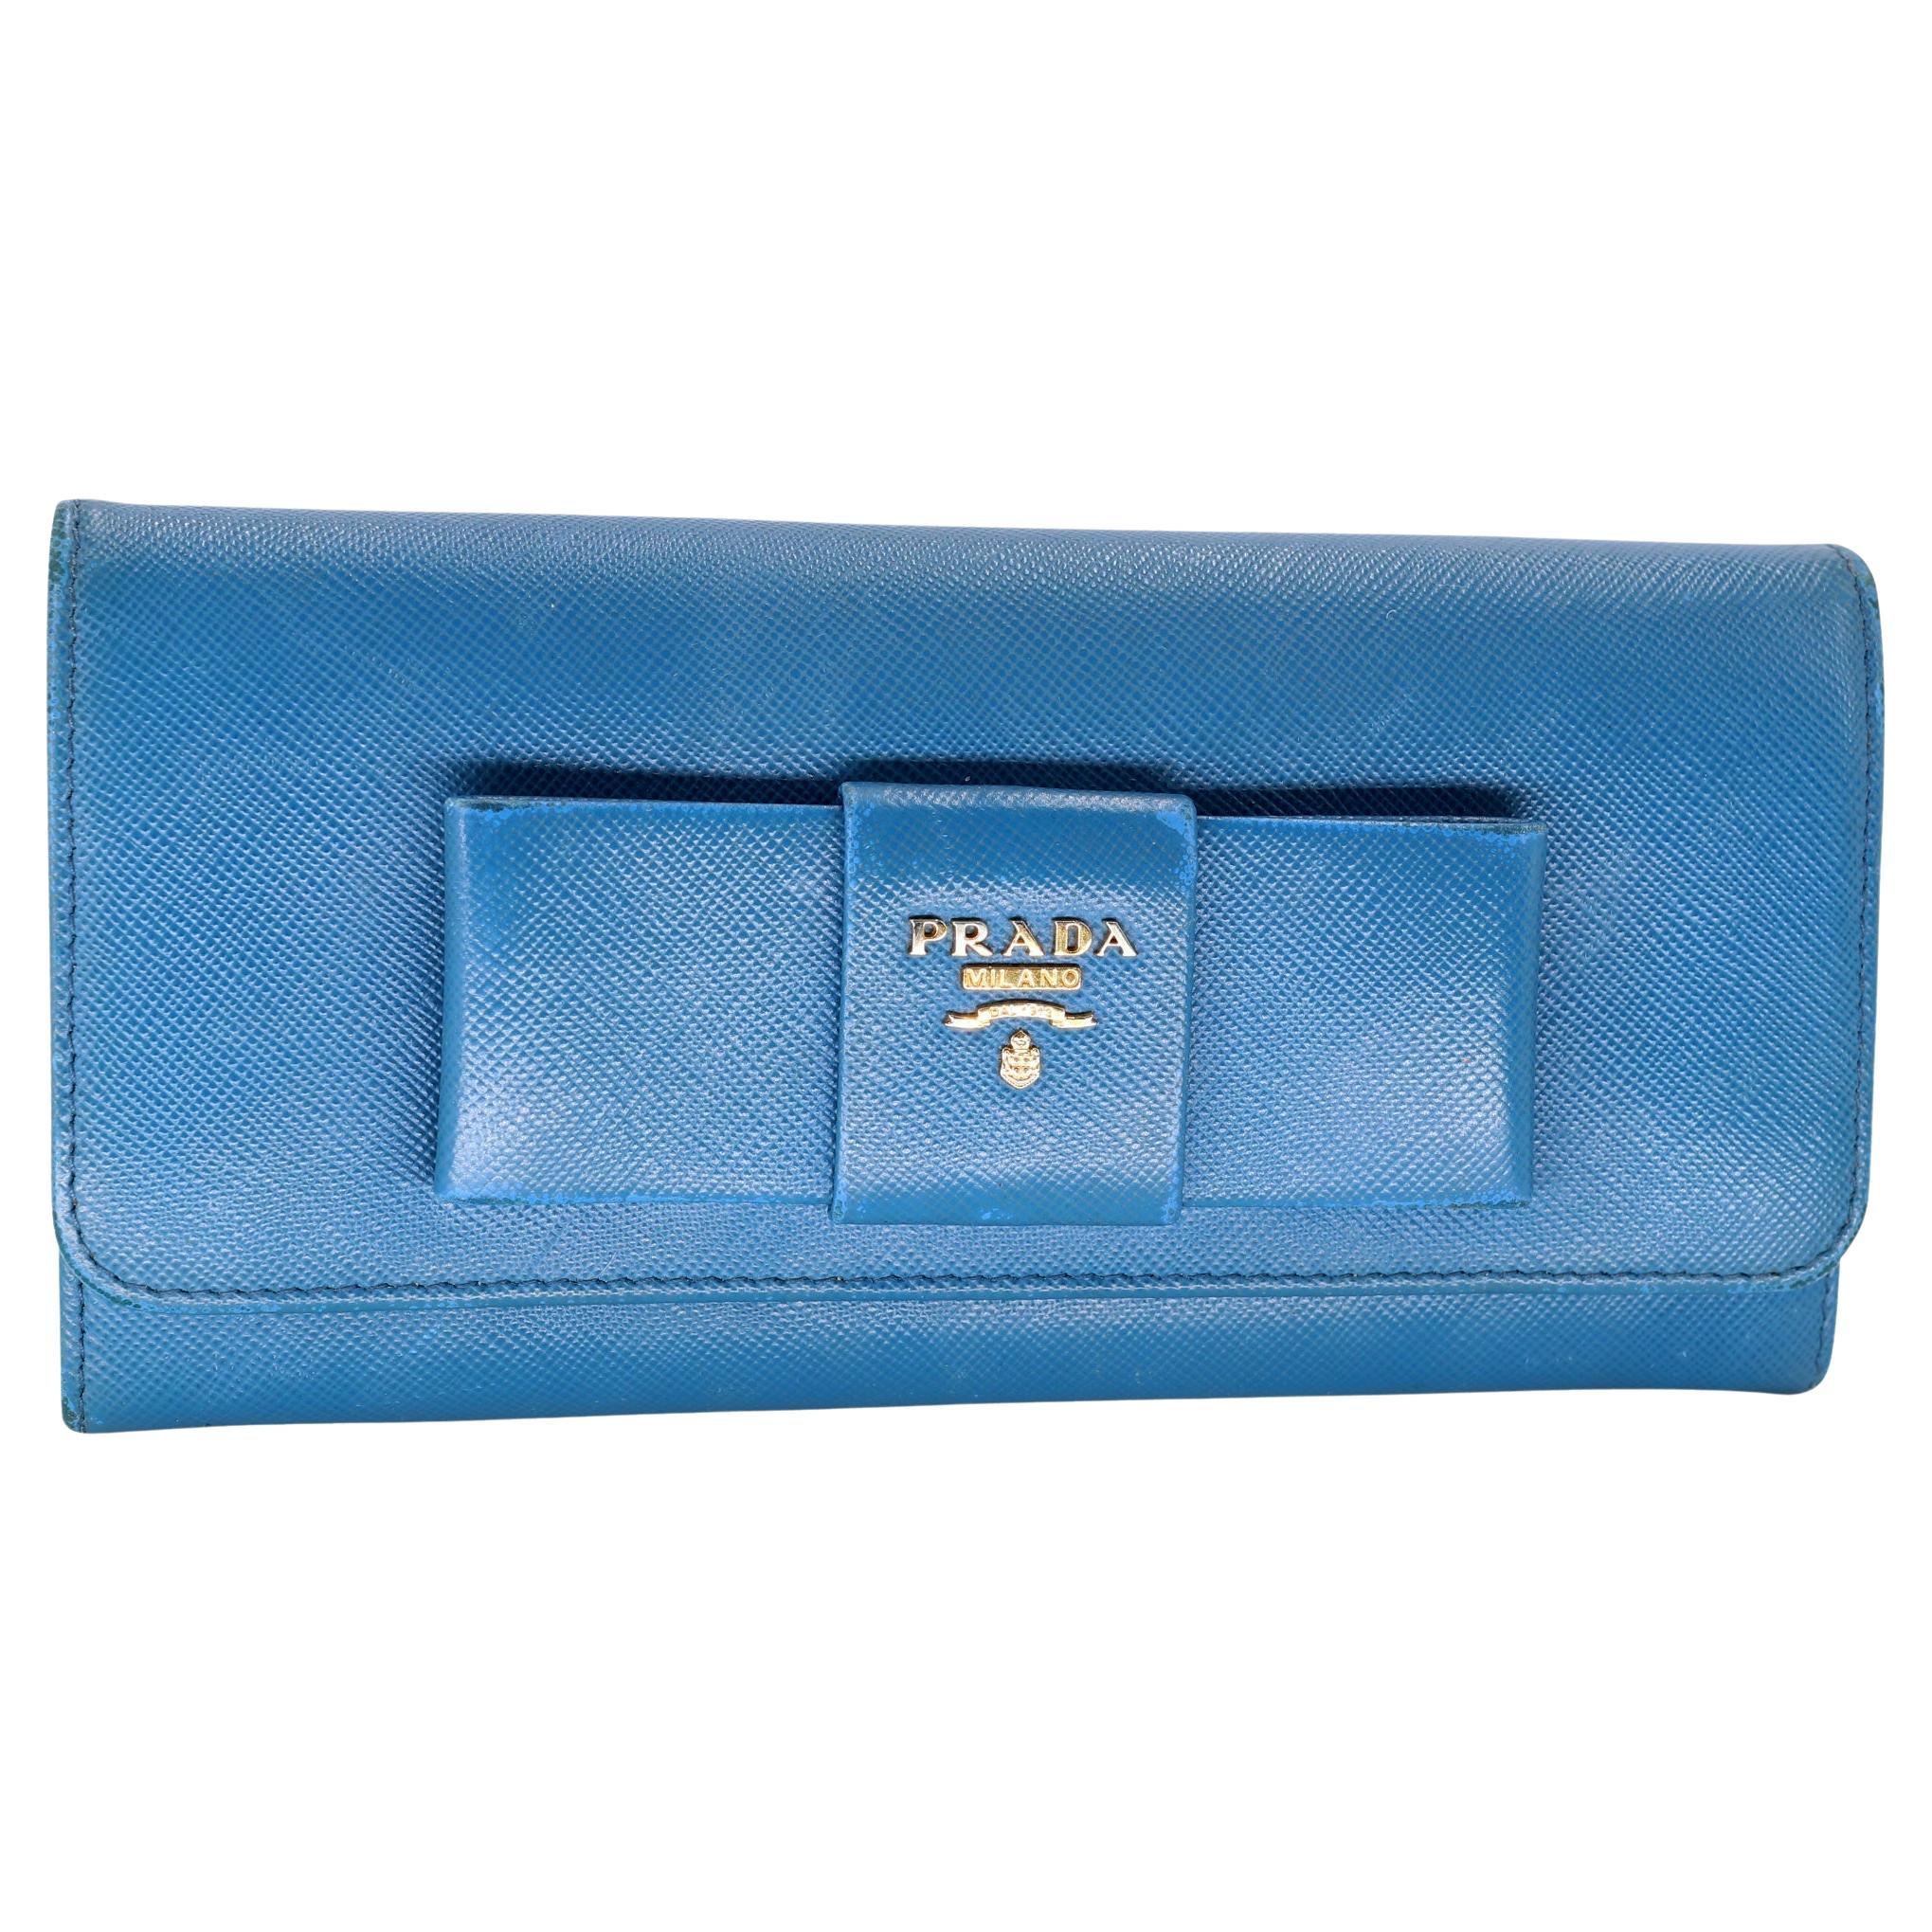 Louis Vuitton Blue 19lk0110 Epi Toledo Trifold Compact Elise